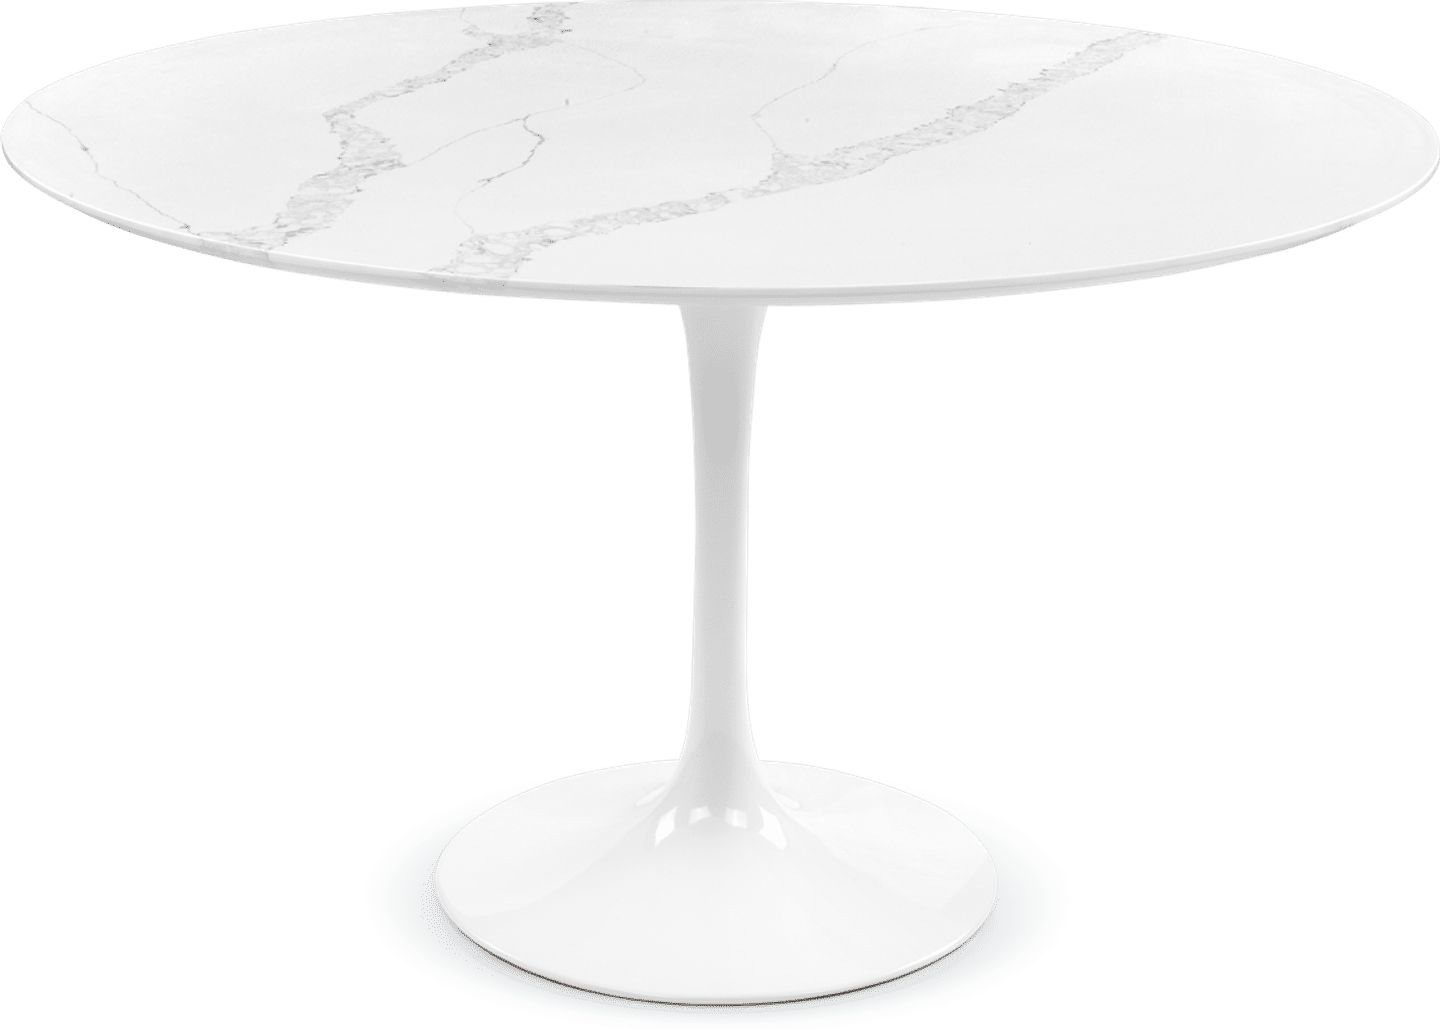 Tulip Round Dining Table - White Marble White Quartz 160/120 CM image.